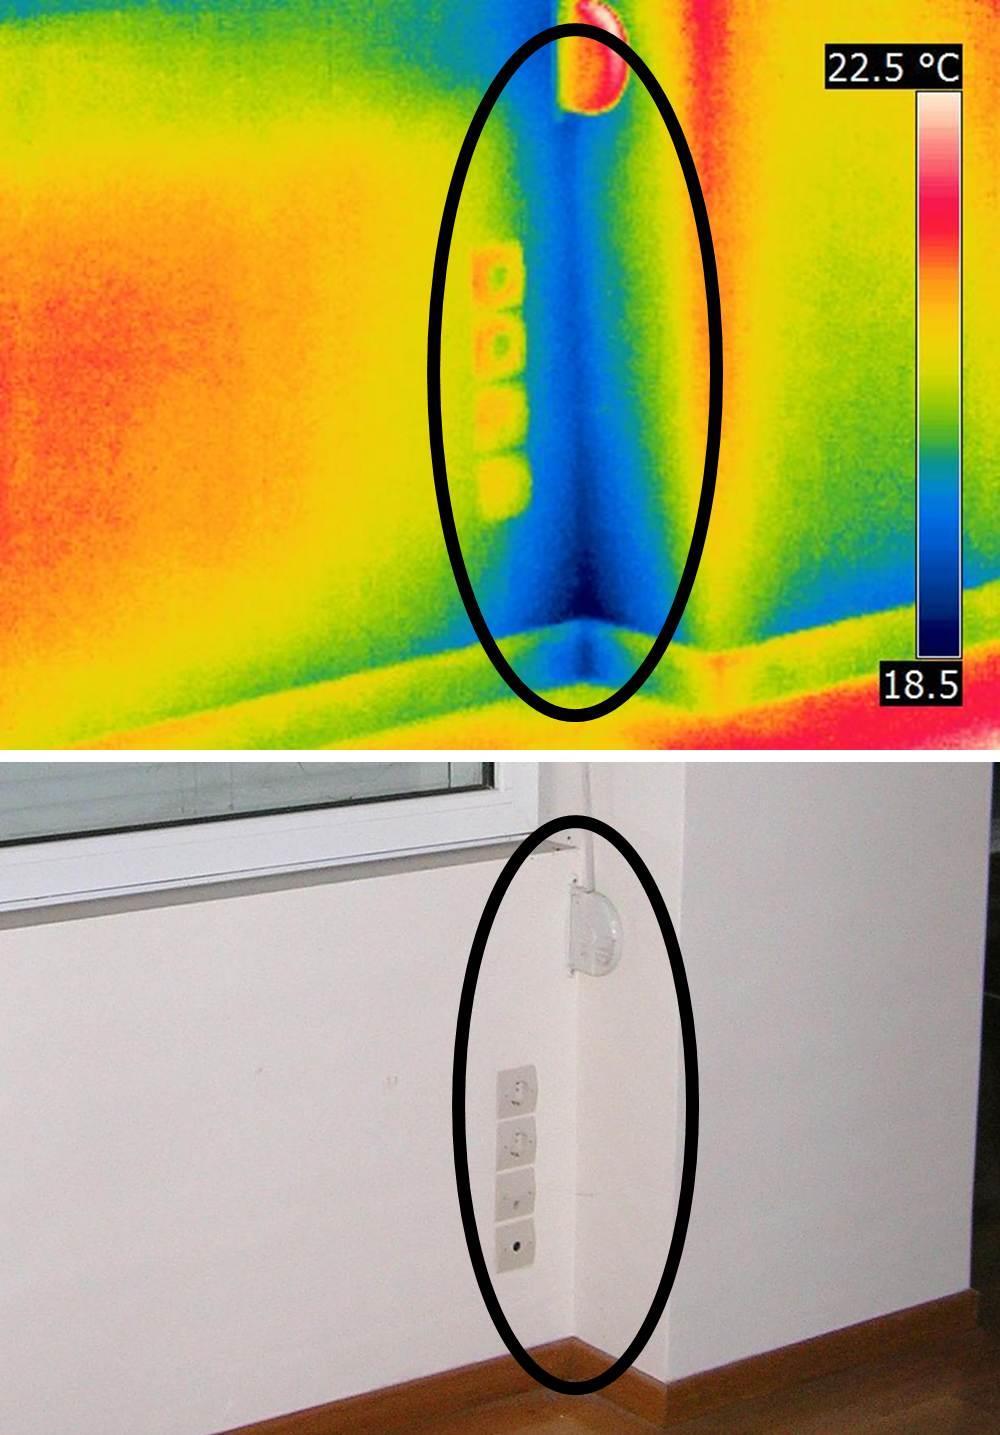 Στην Εικόνα 38 παρουσιάζεται ο έλεγχος της τοιχοποιίας Α. Στο θερμογράφημα εμφανίζεται μία περιοχή με μειωμένη θερμοκρασία σε σχέση με την υπόλοιπη τοιχοποιία.